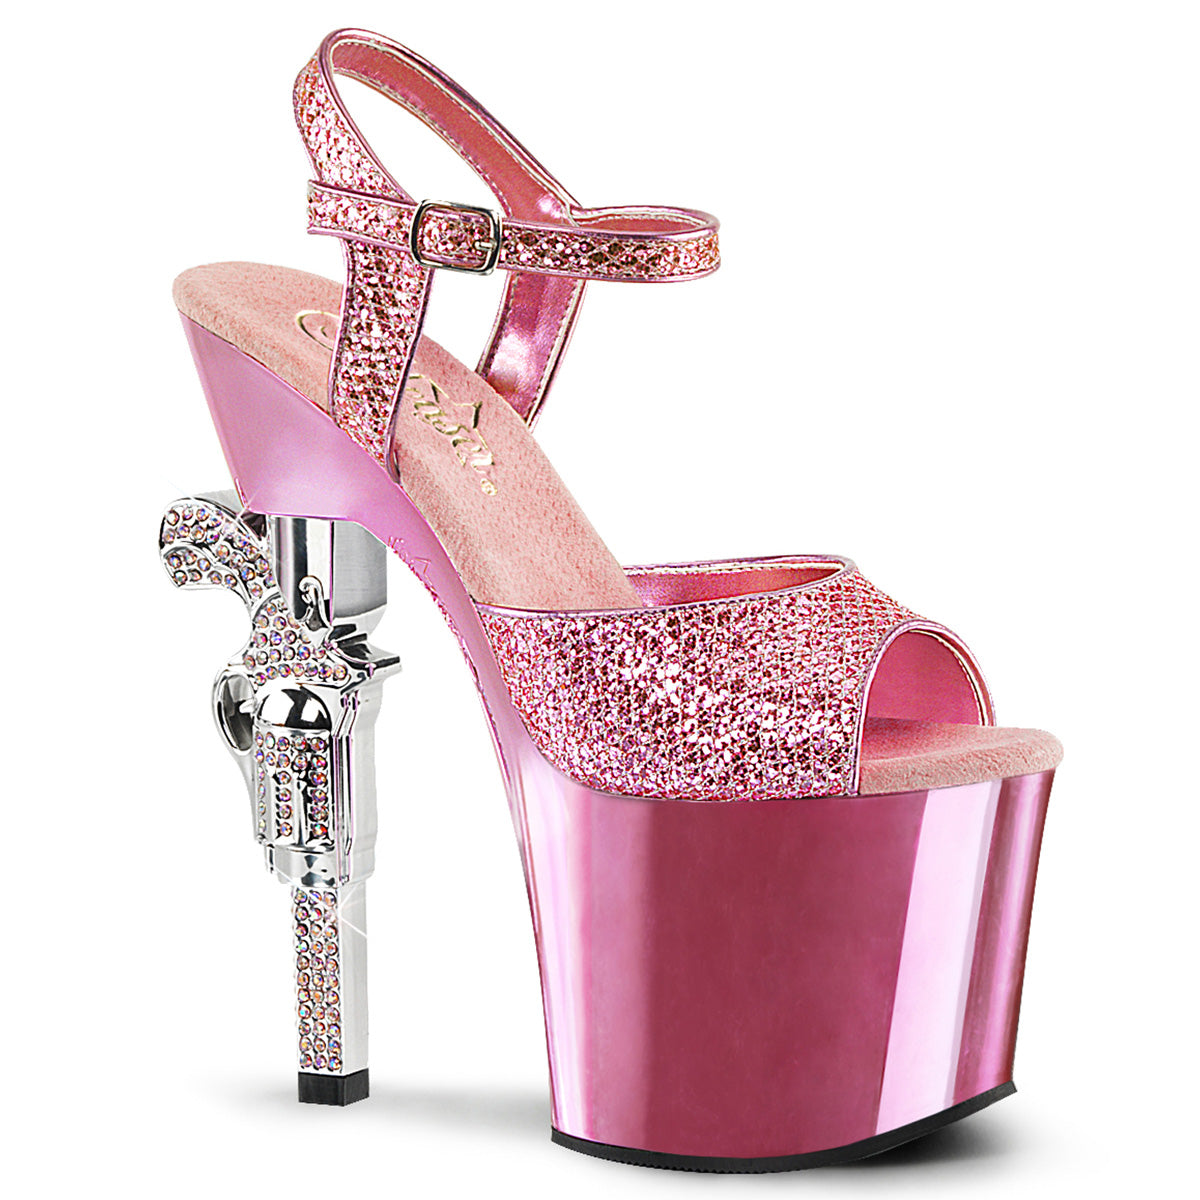 REVOLVER-709G 7" Heel Baby Pink  Stripper Platforms High Heels